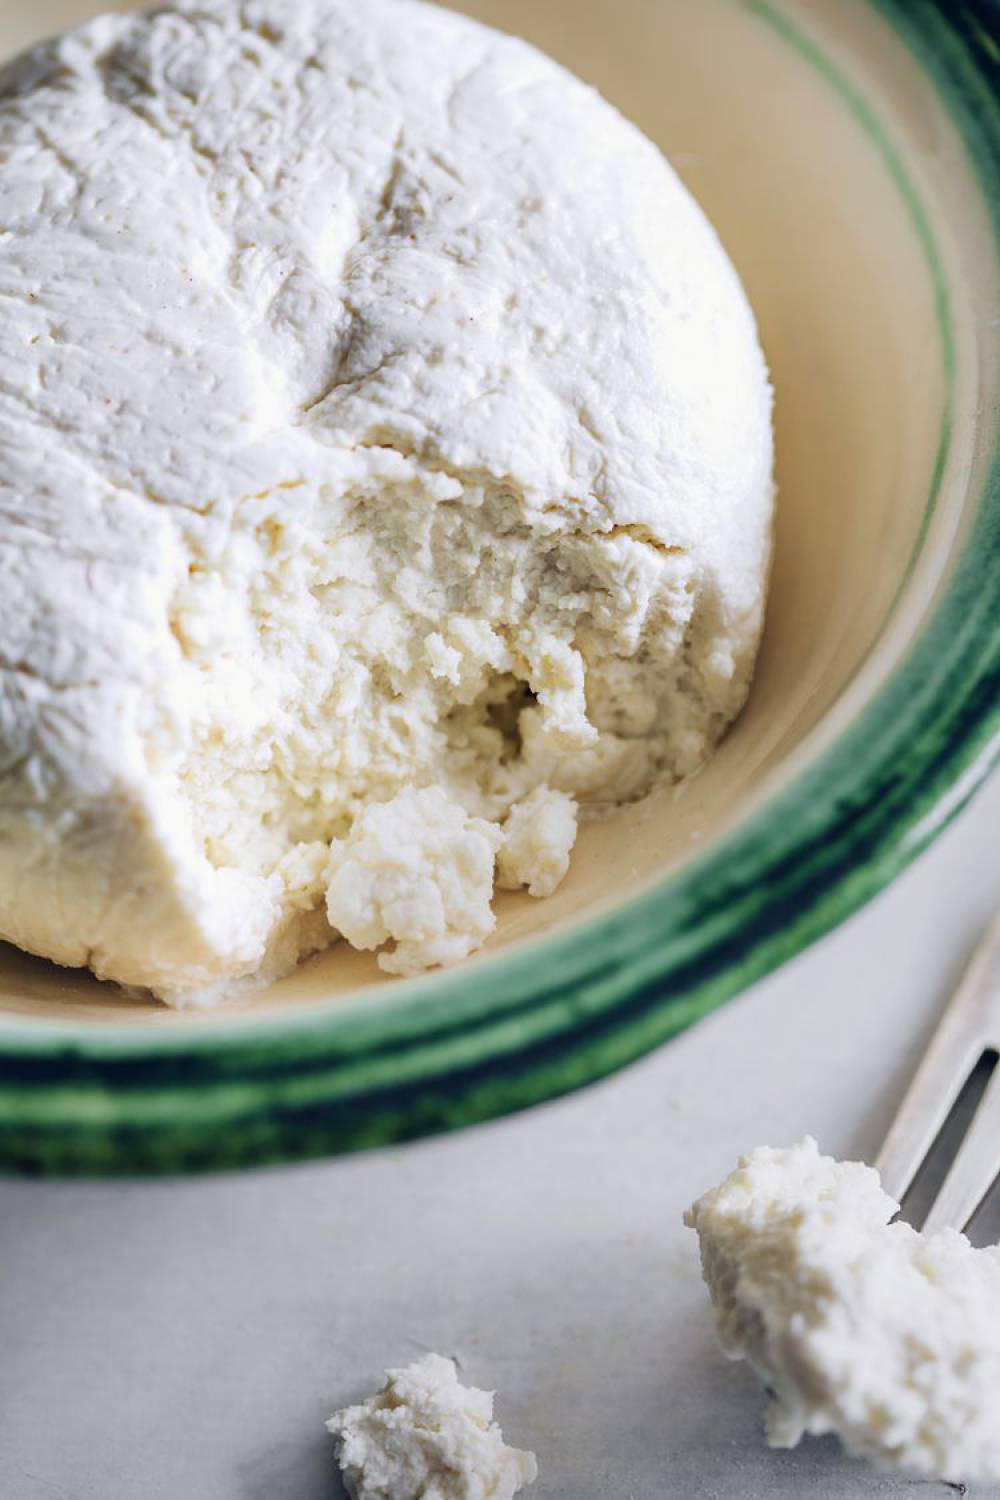 دستورالعمل خانگی تهیه پنیر سفید خشک فرسکو